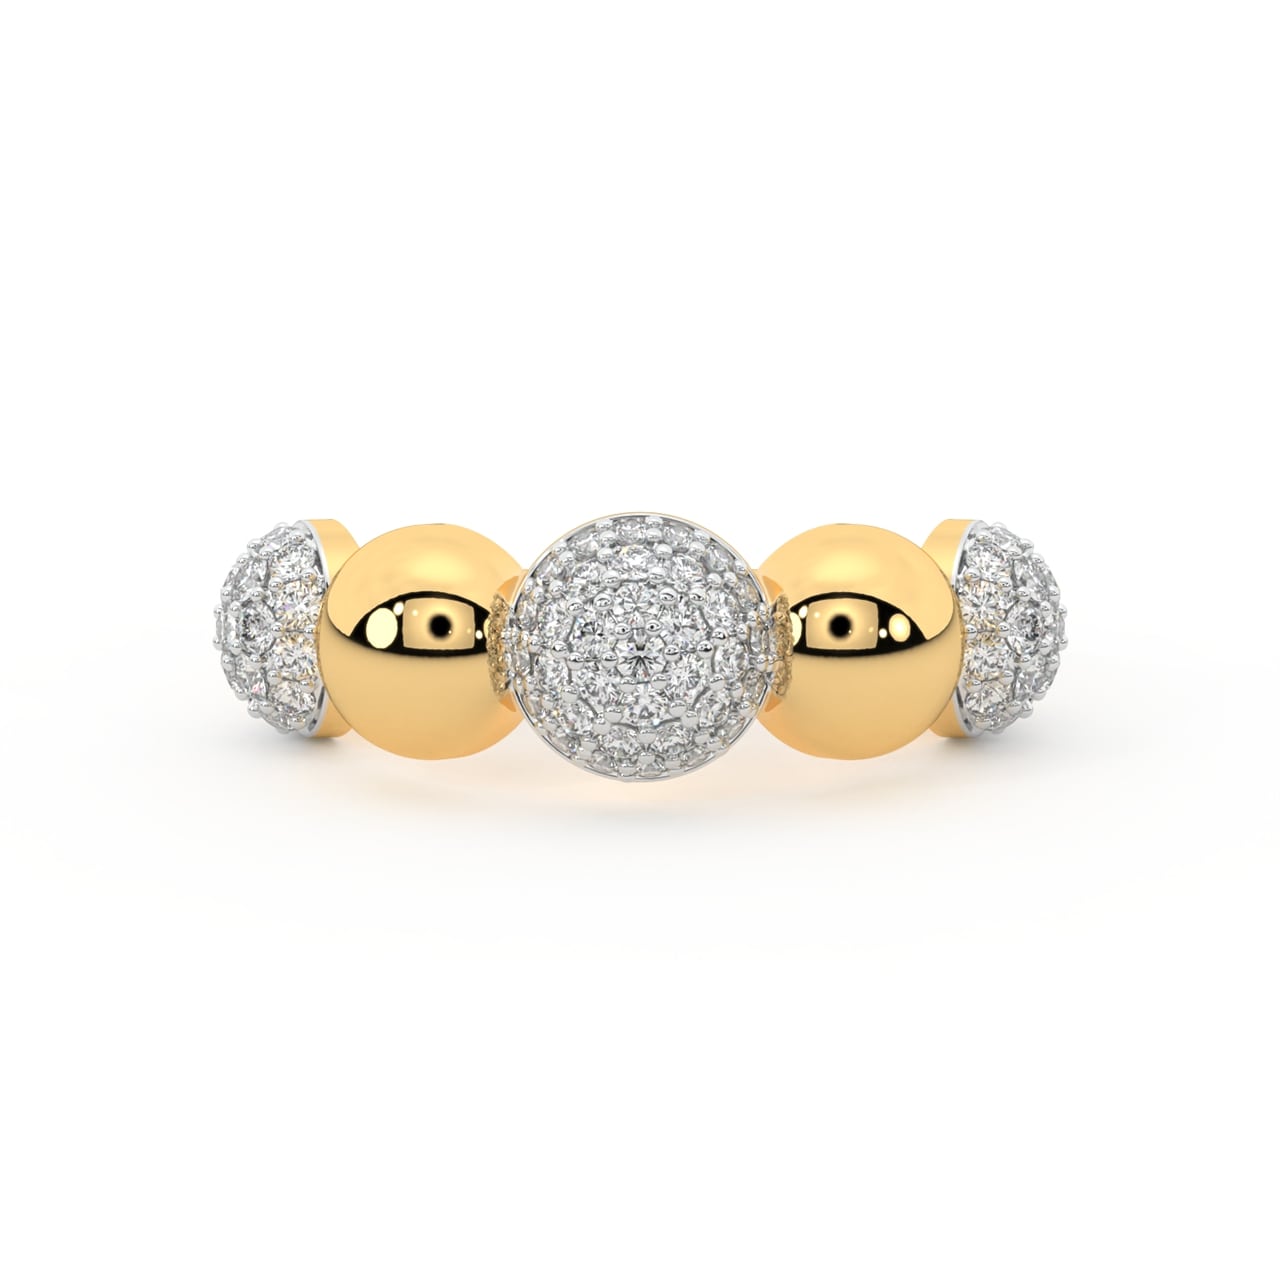 Yahaira Round Diamond Engagement Ring